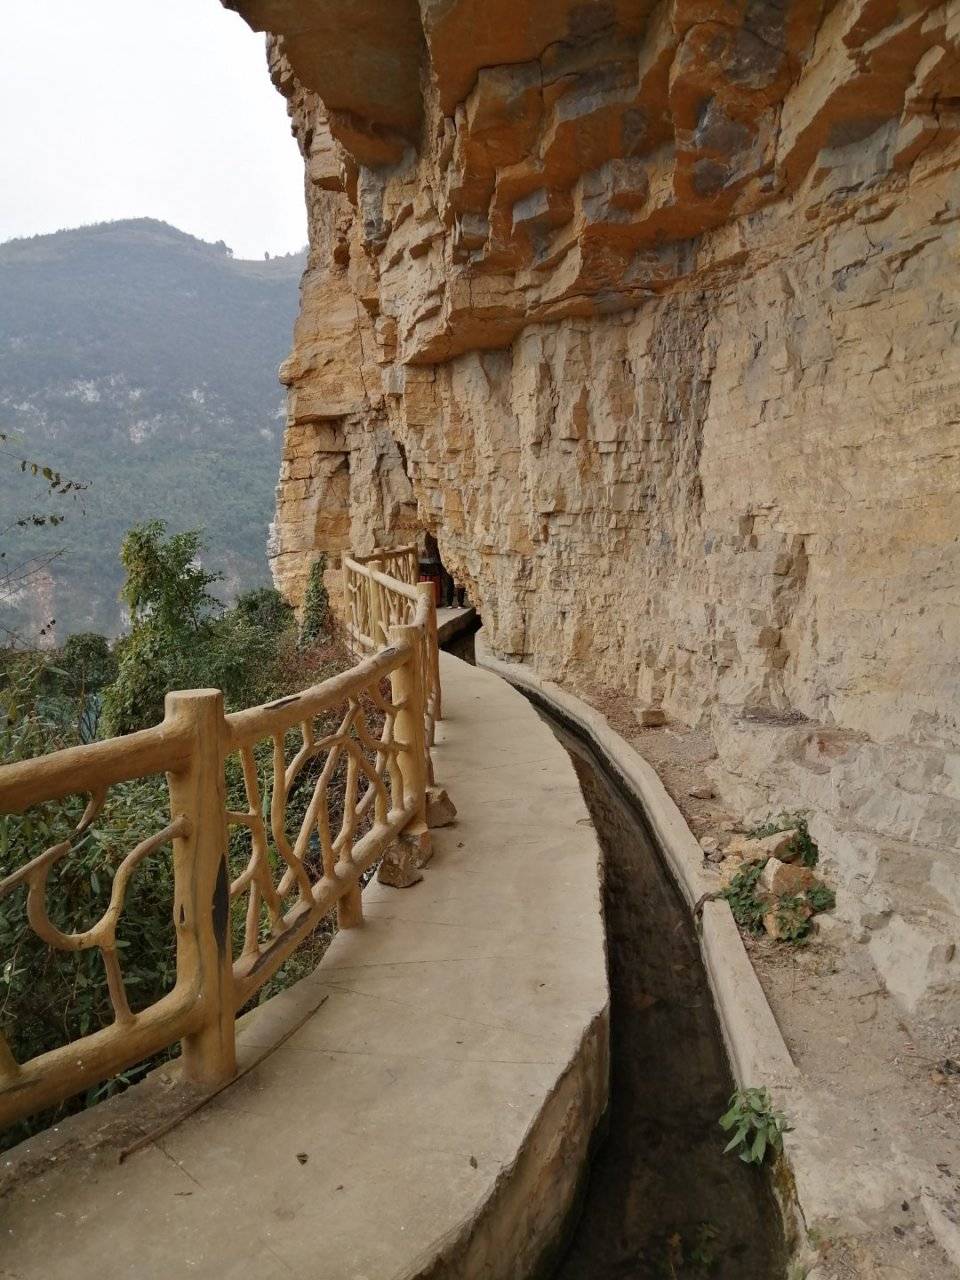 悬崖峭壁上,全人工开凿的工程,贵州后山镇这个红旗渠太震撼了